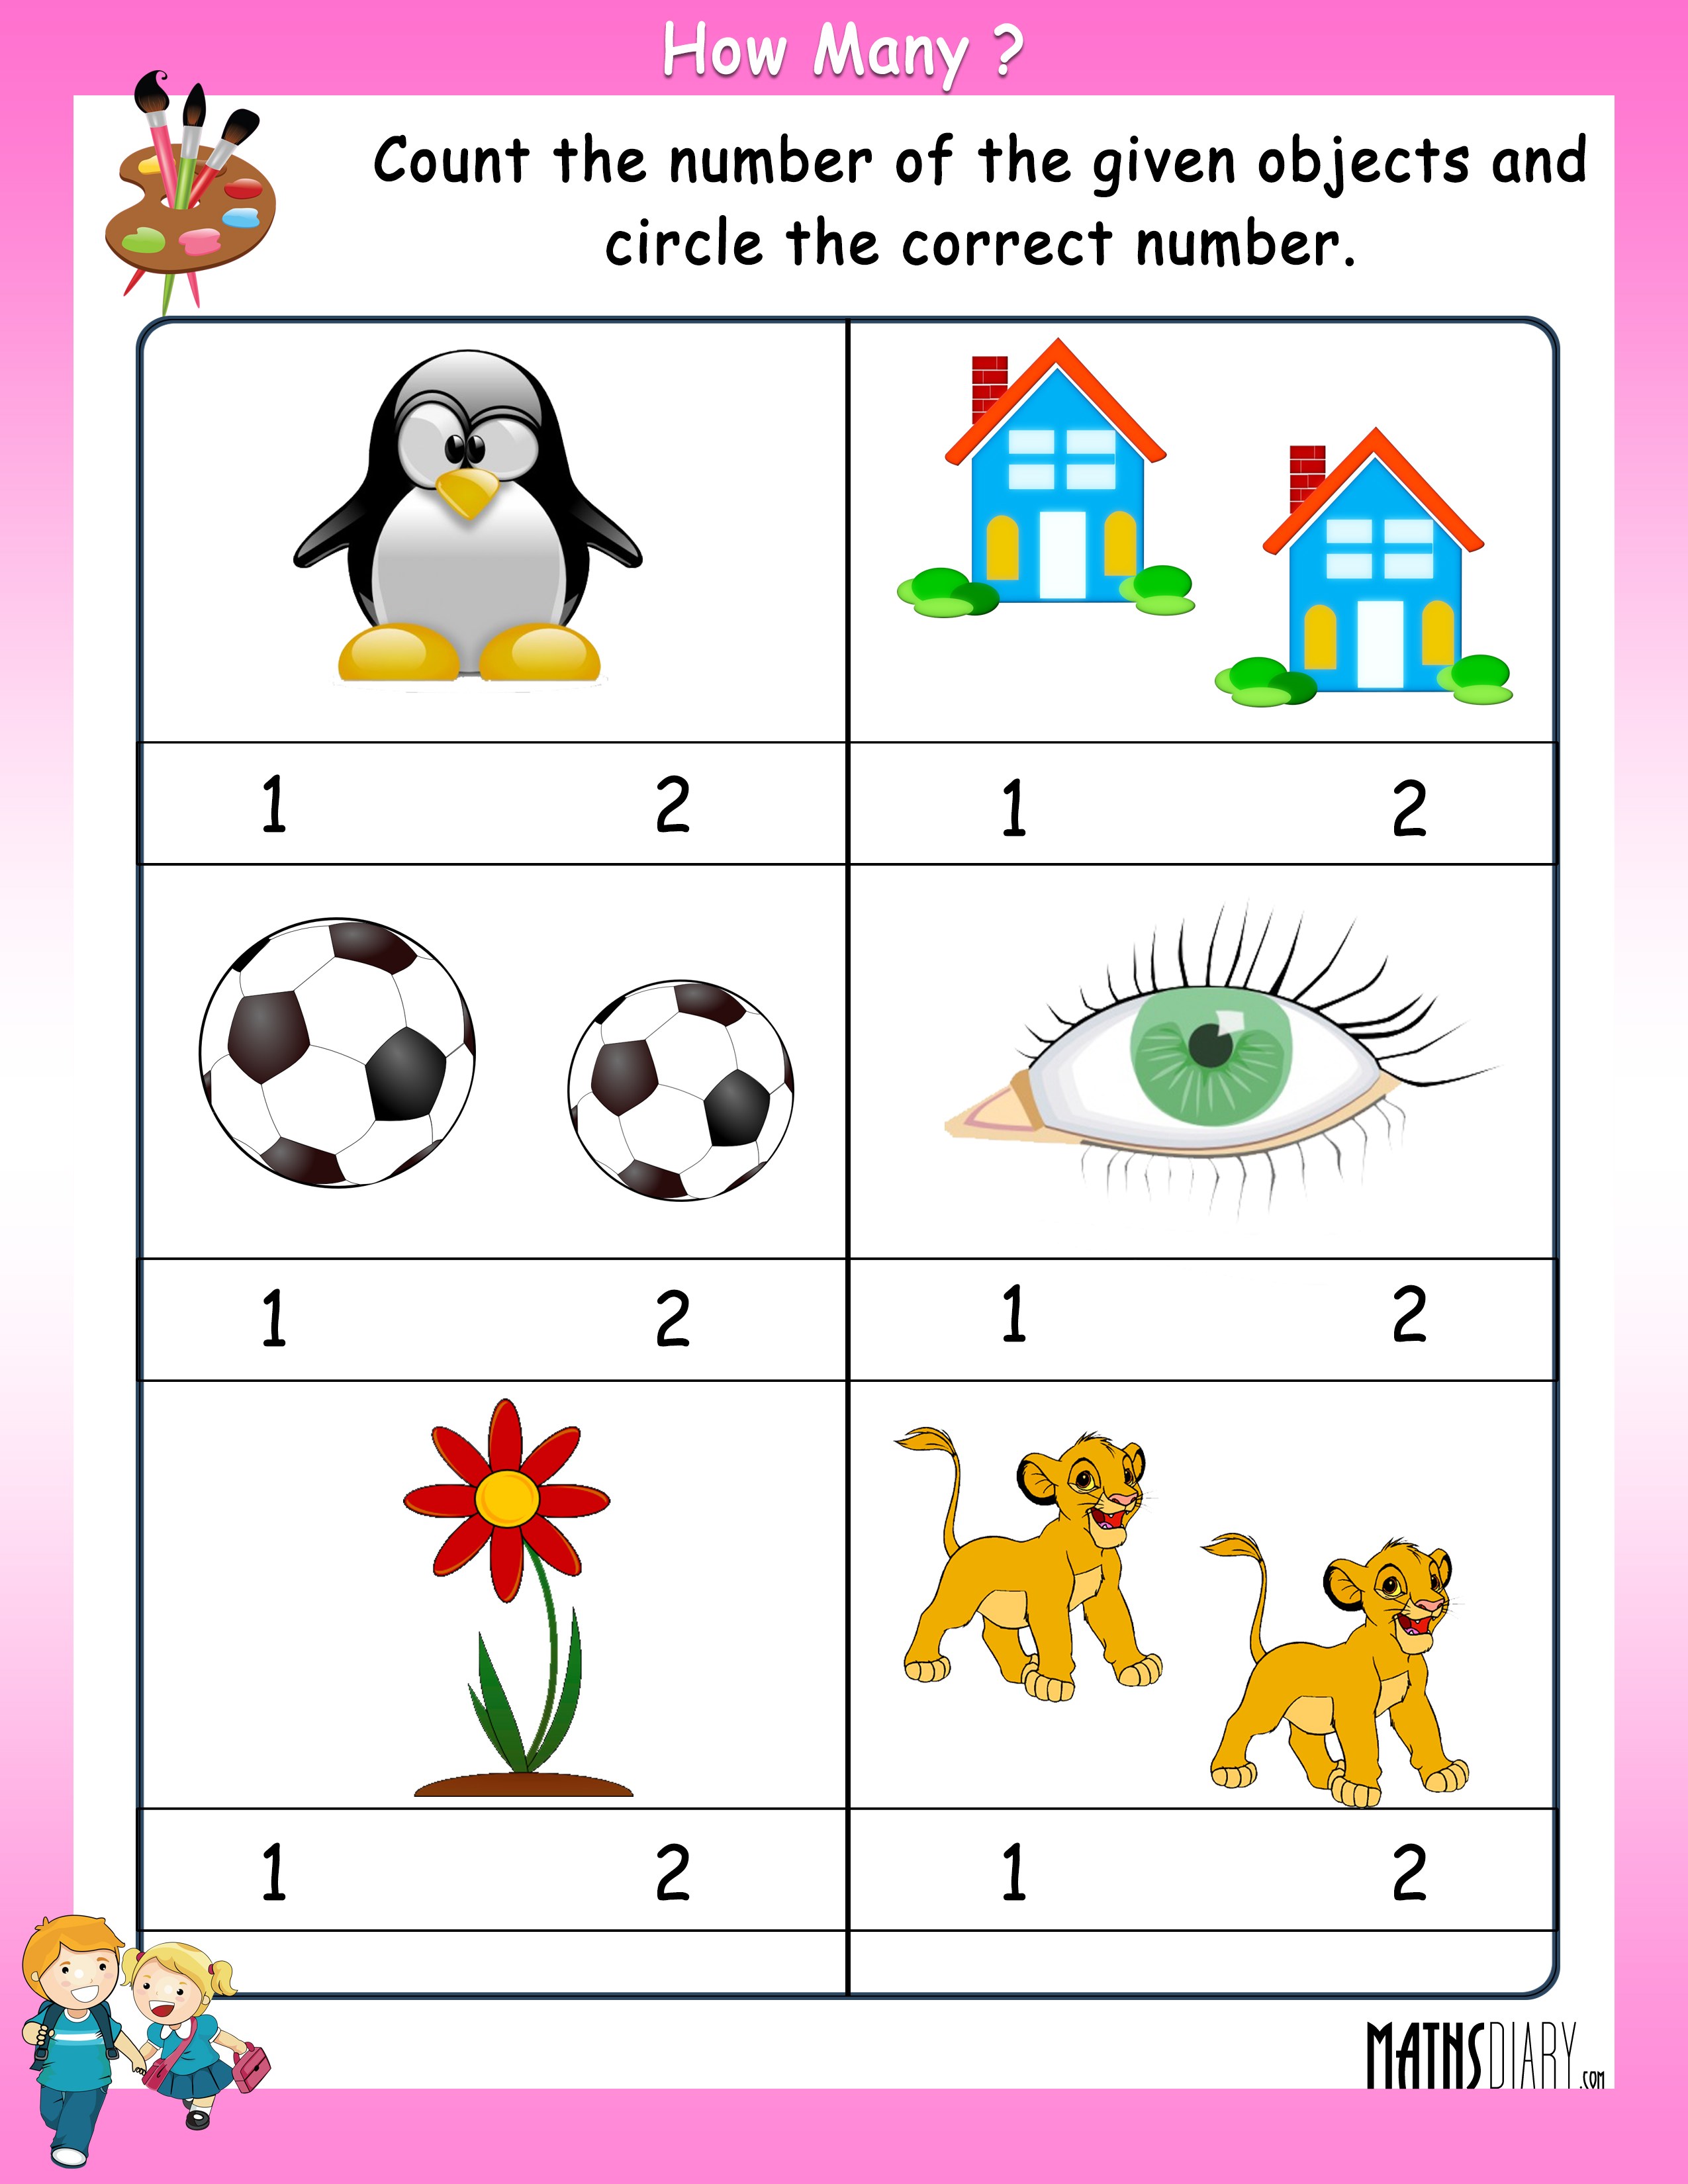 number-trace-worksheets-for-kids-activity-shelter